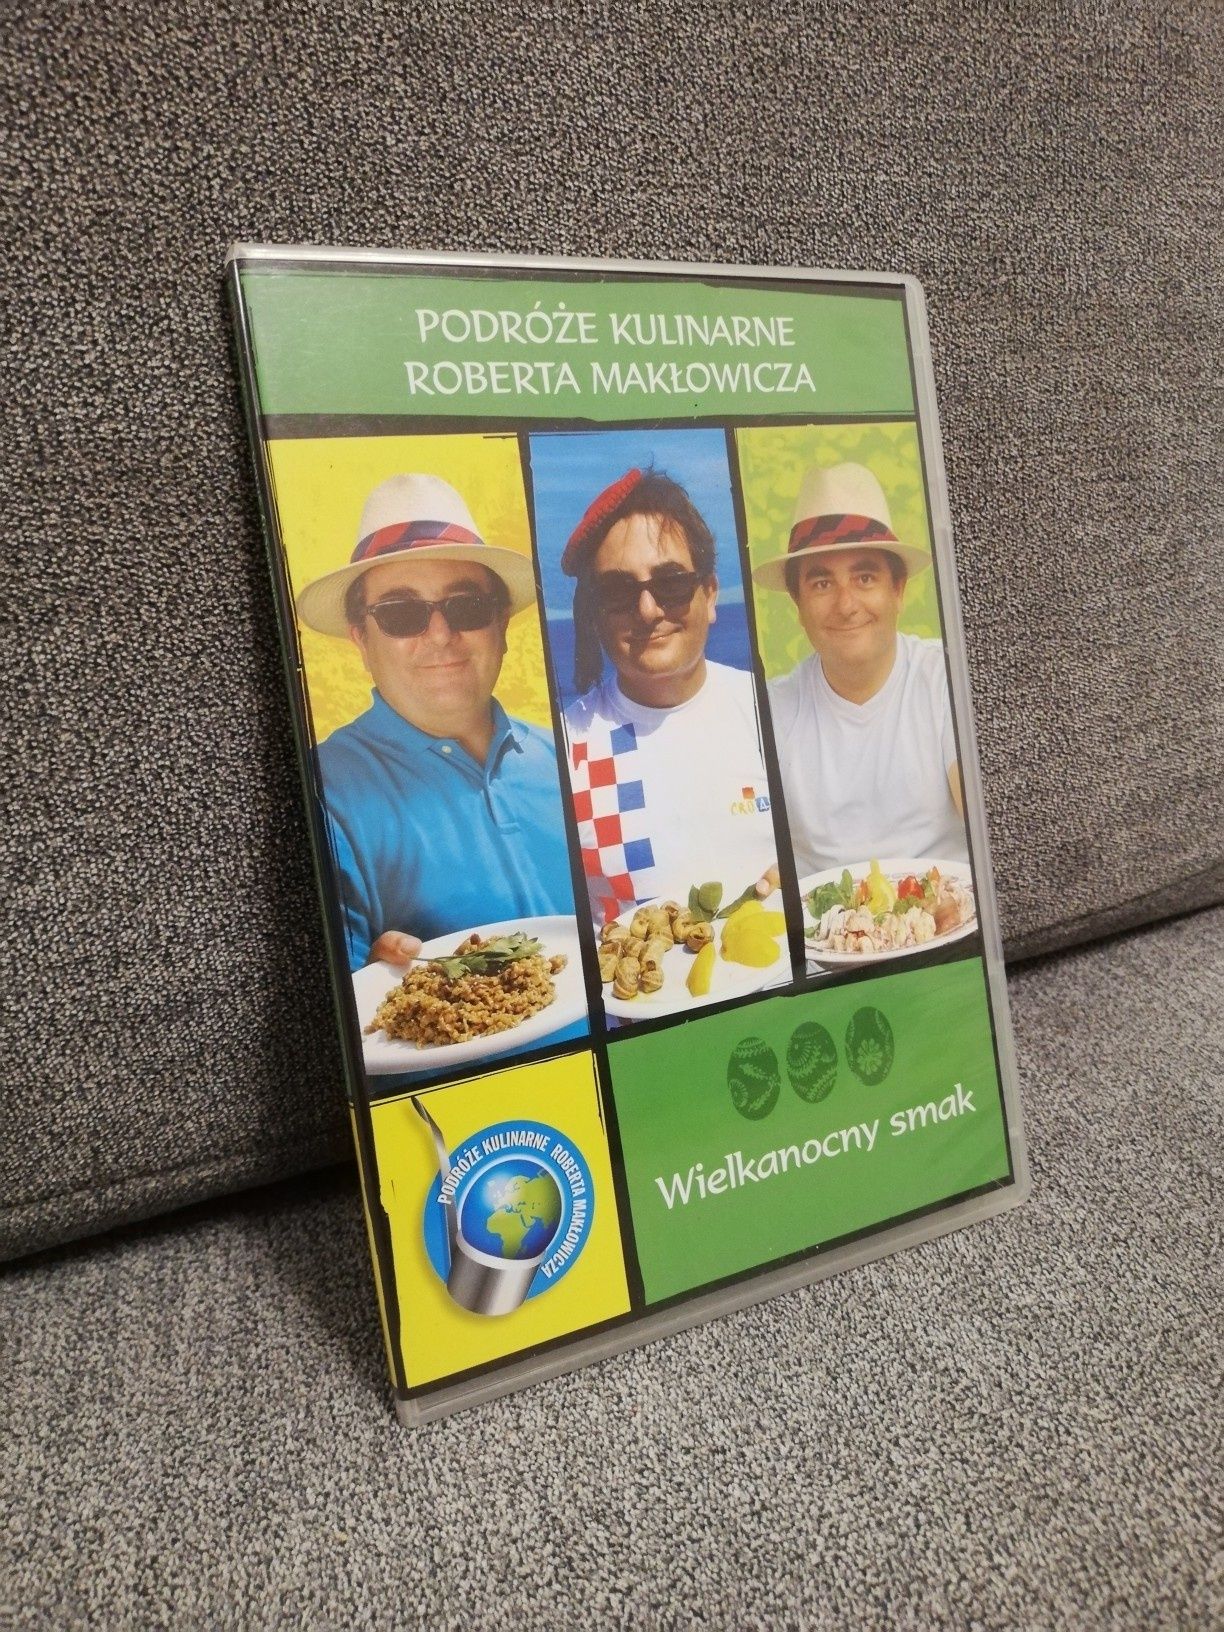 Podróże kulinarne Roberta Makłowicza DVD SLIM Wielkanocny smak